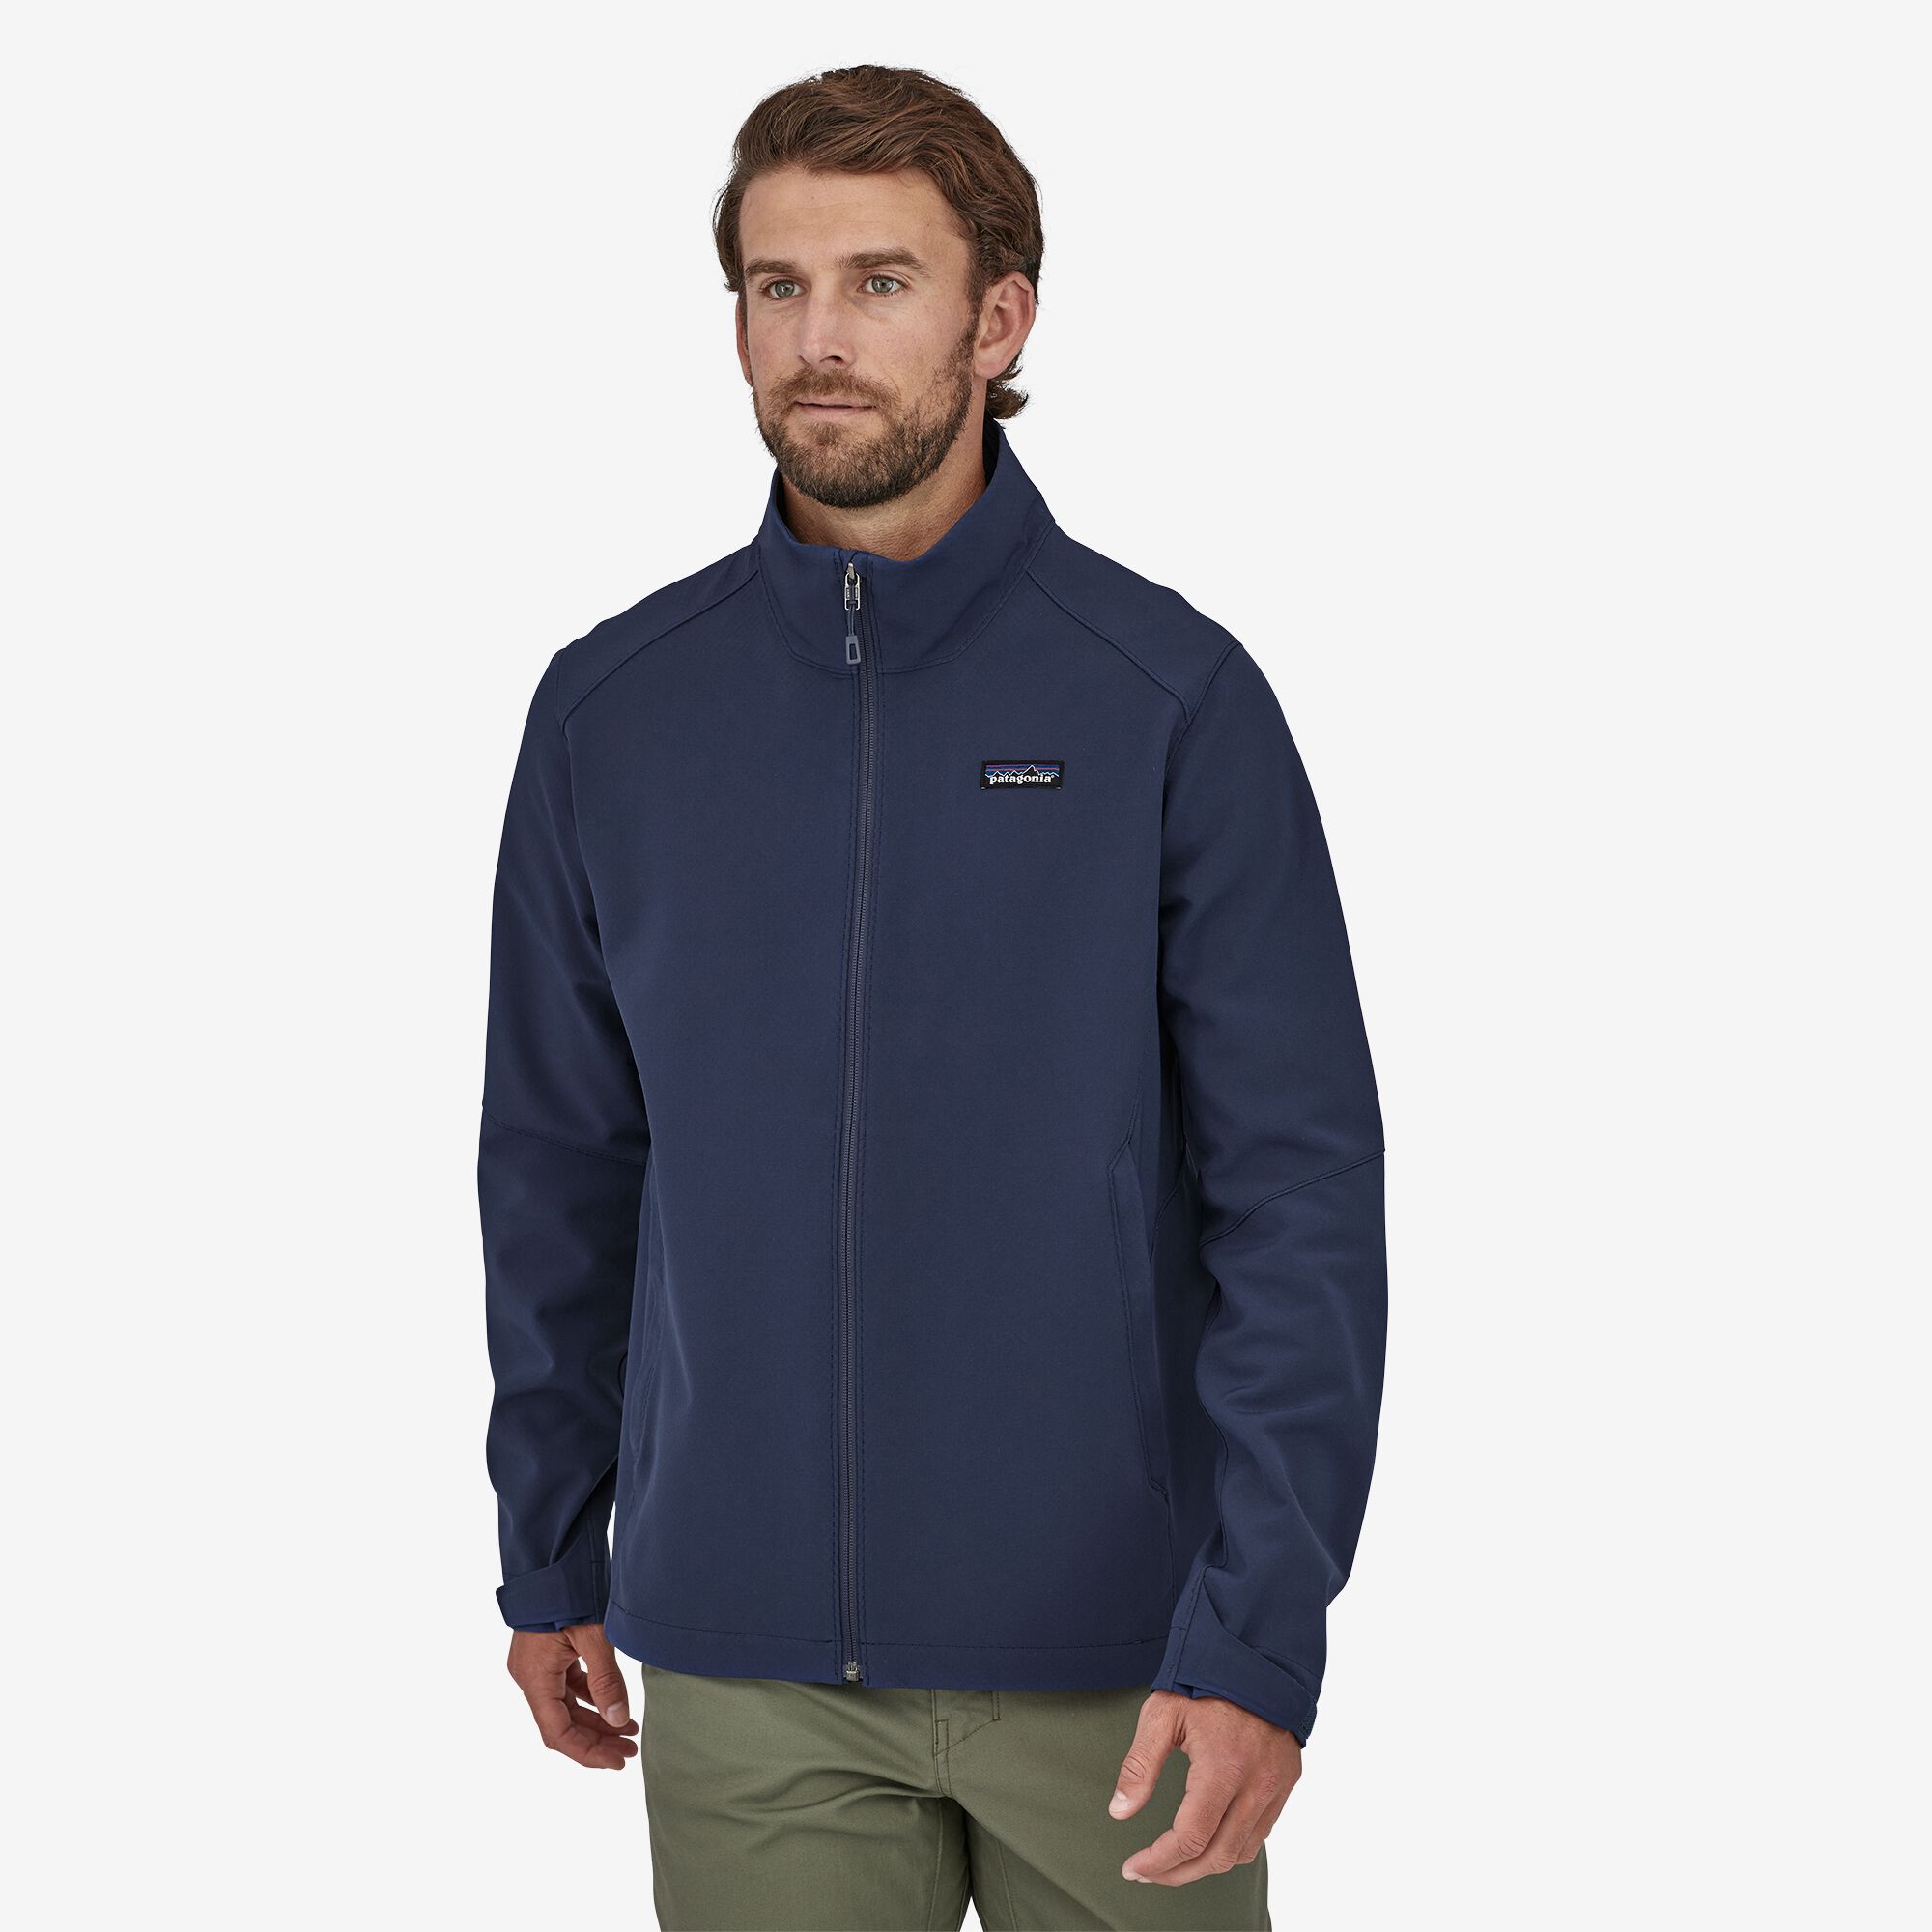 Patagonia Men's Adze Jacket